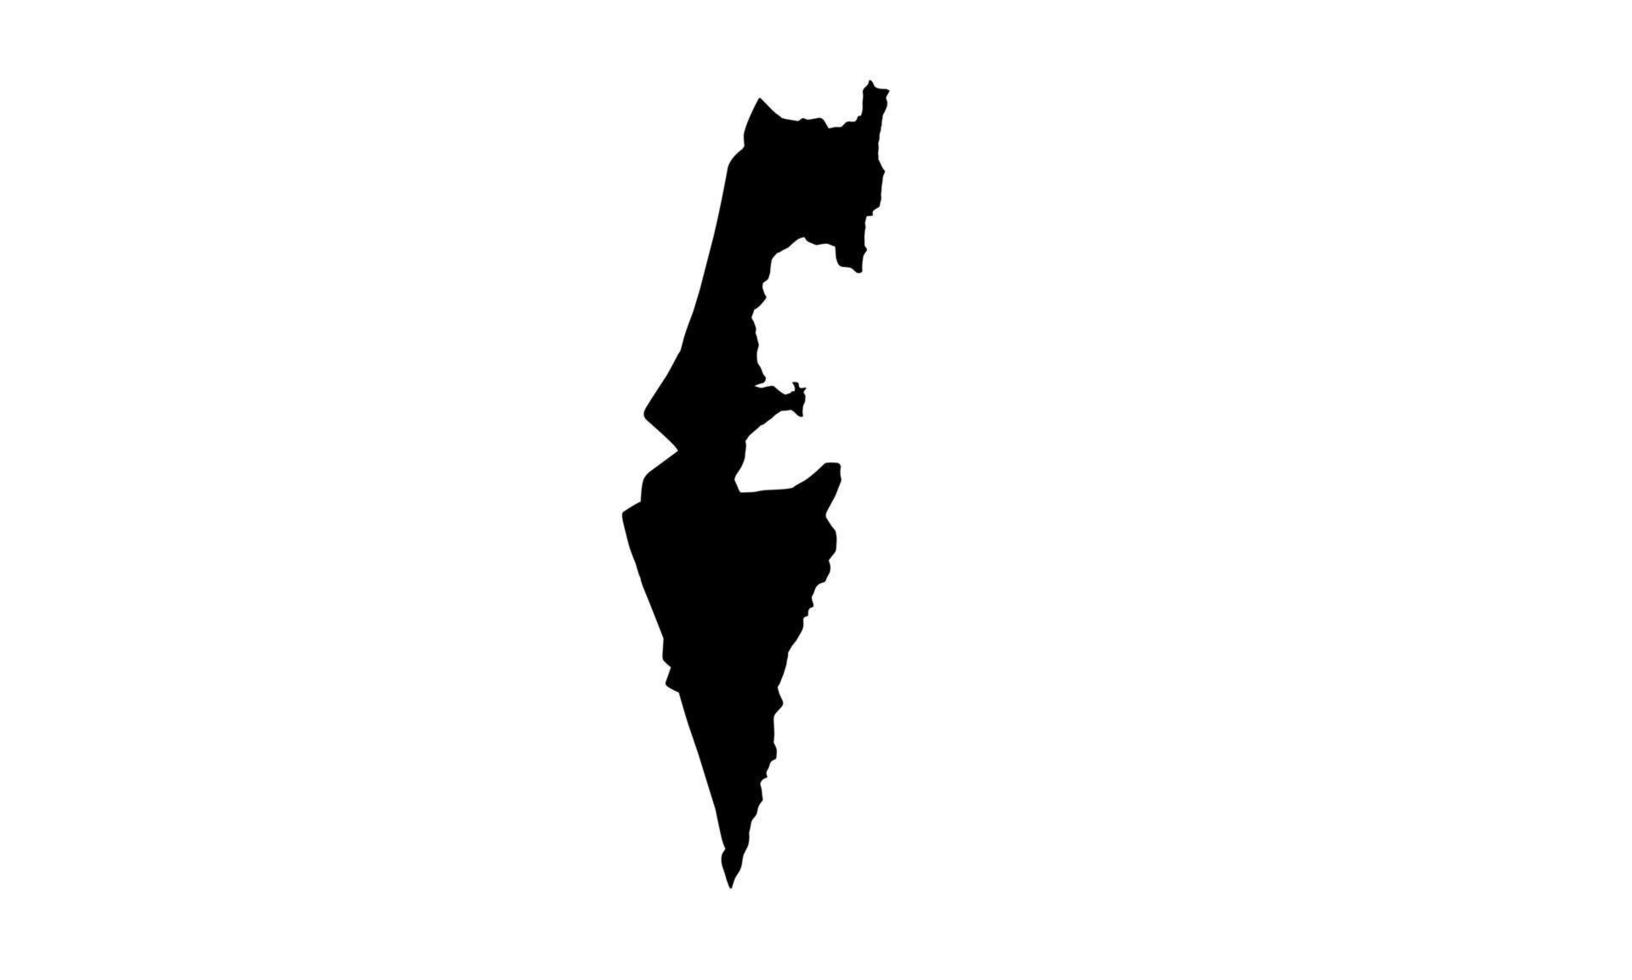 Israele nazione nero silhouette carta geografica vettore